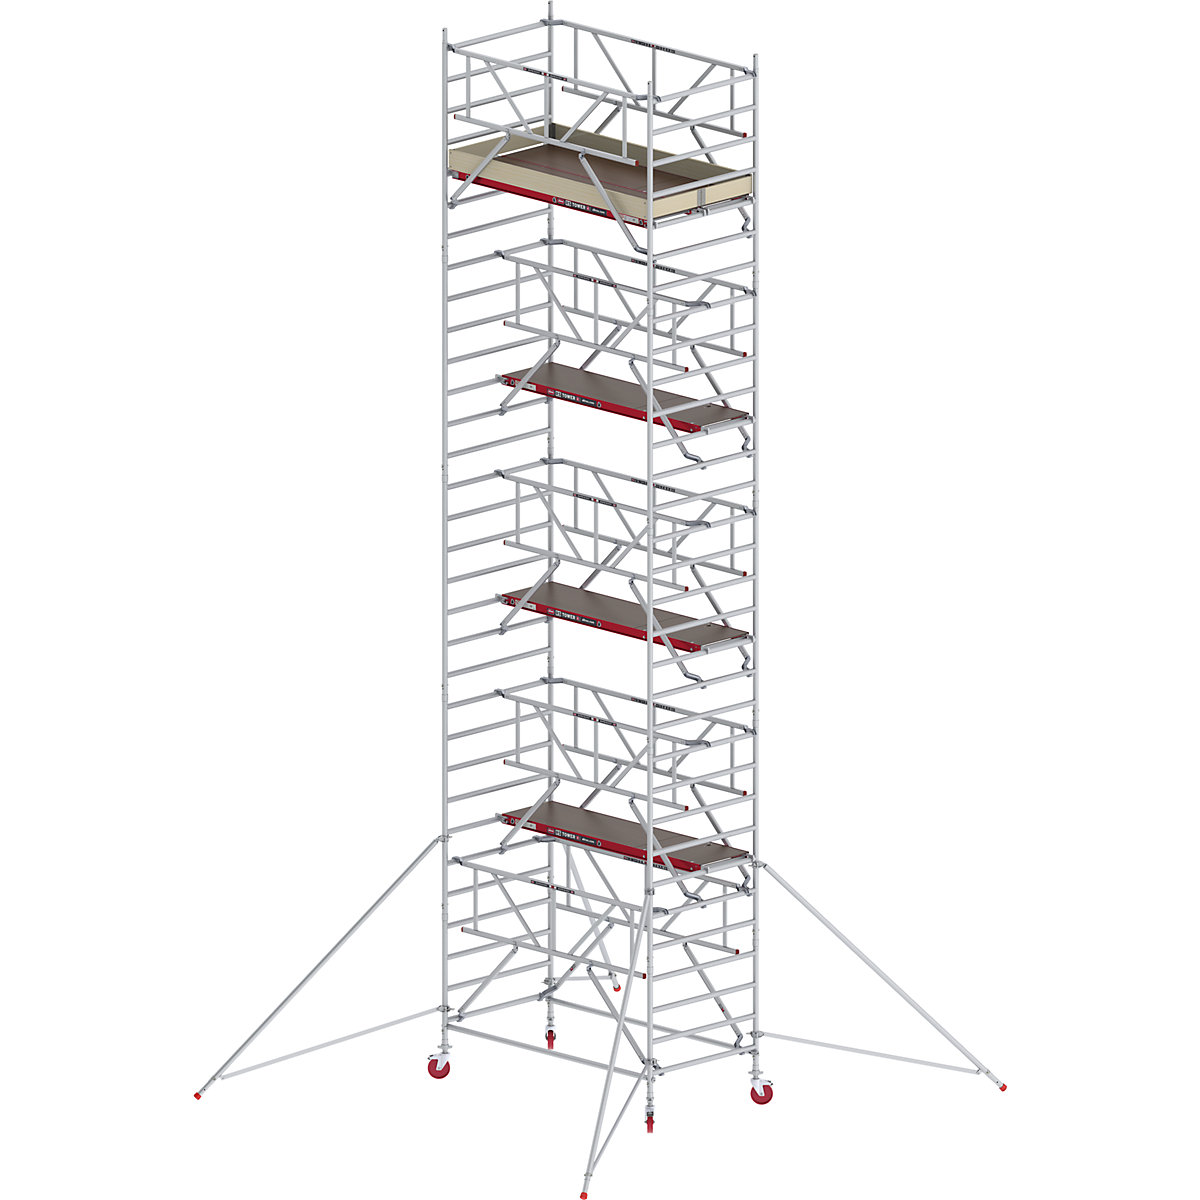 Schelă mobilă RS TOWER 42 lată cu Safe-Quick® – Altrex, platformă din lemn, lungime 2,45 m, înălțime de lucru 10,20 m-4